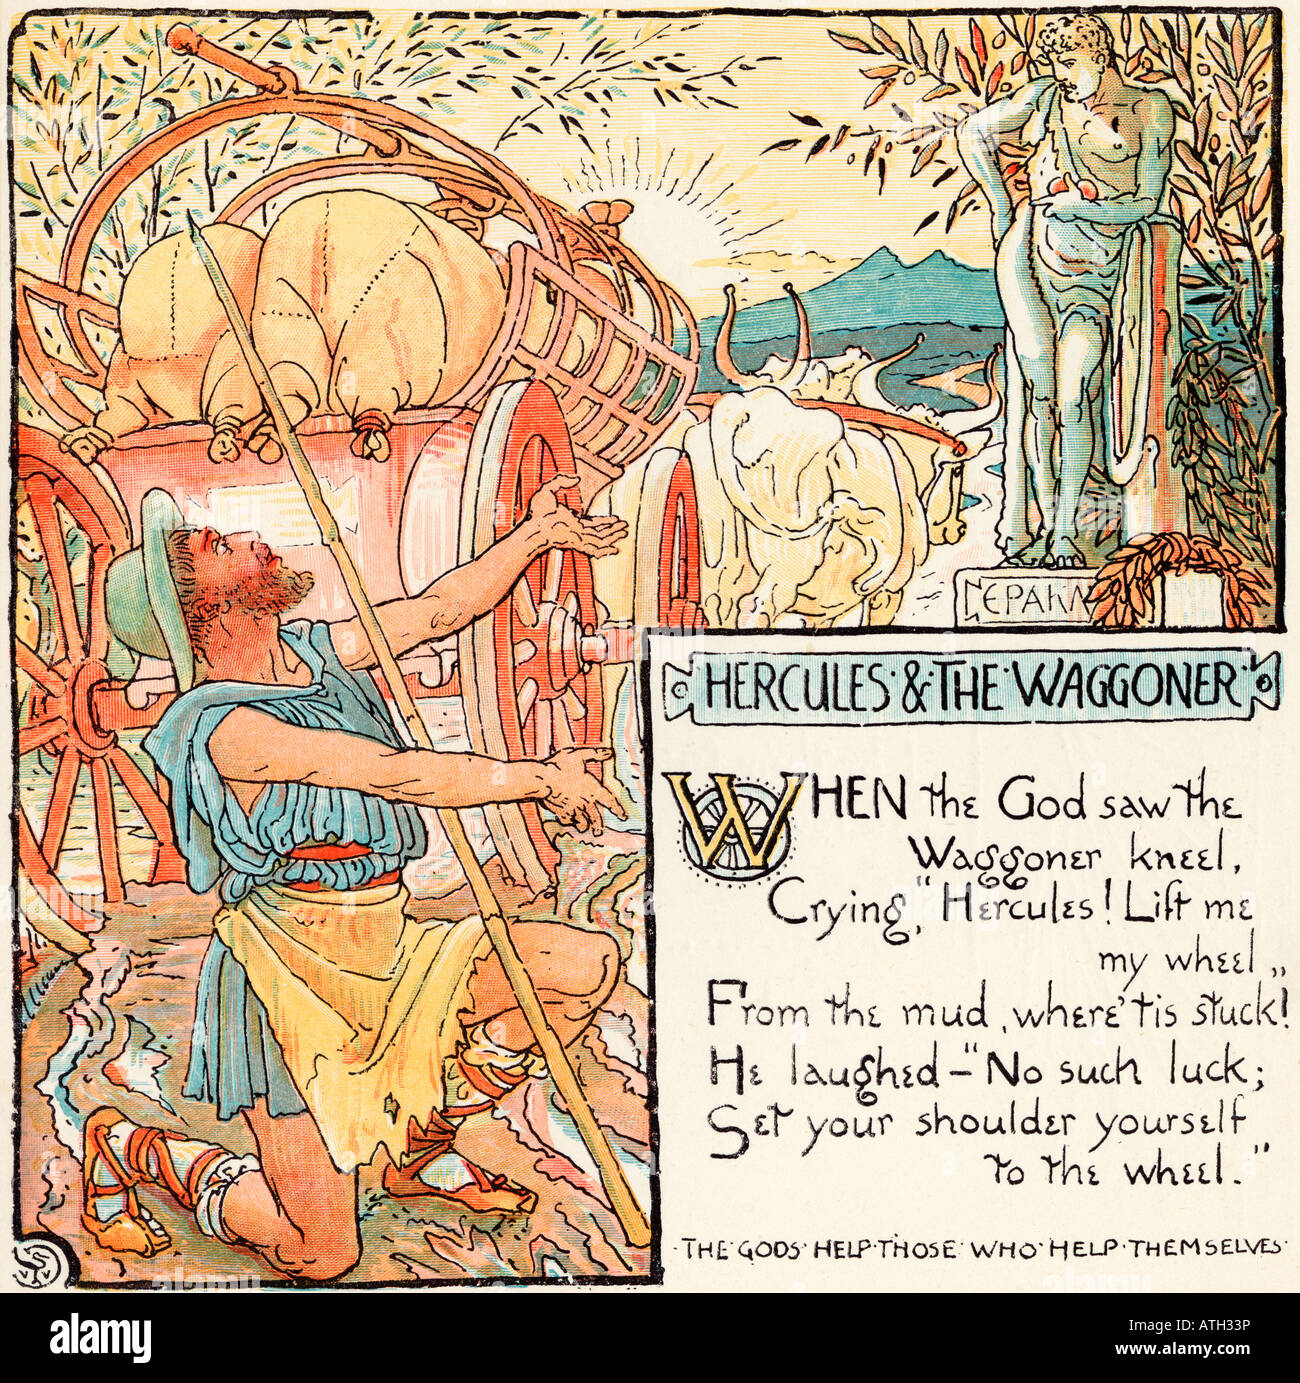 Herkules und der Wagoner. Aus dem Buch The Baby's Own Aesop von Walter Crane, erschienen um 1920. Stockfoto